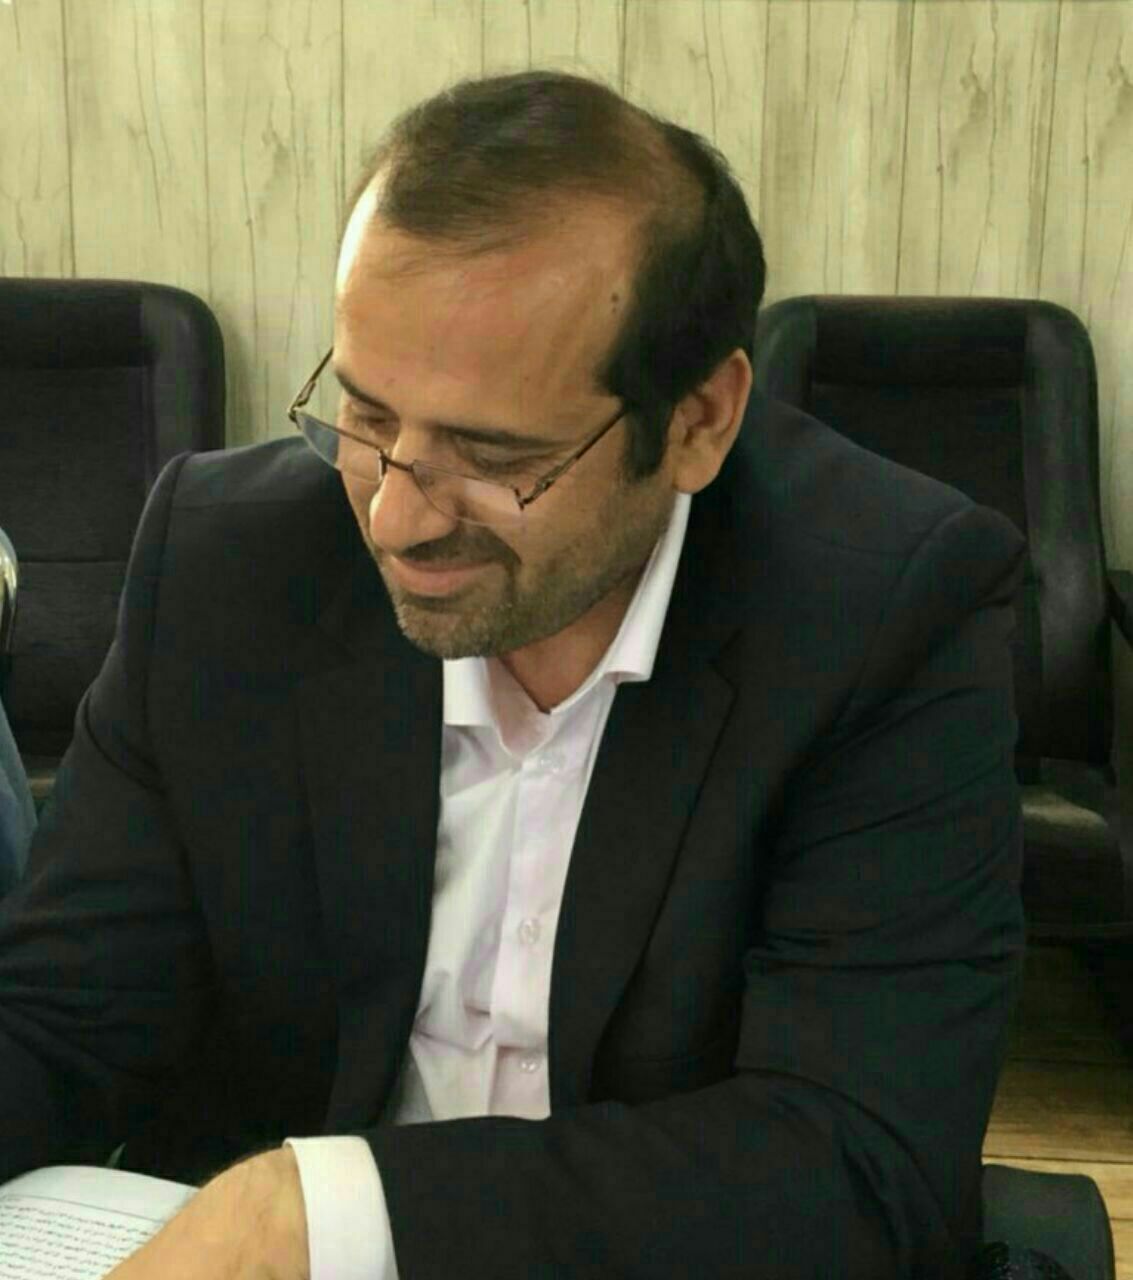 بیانیه دکتر حسین طلا شهردار سابق اسلامشهر بعد از قبول استعفای ایشان از سوی شورای اسلامی شهر اسلامشهر